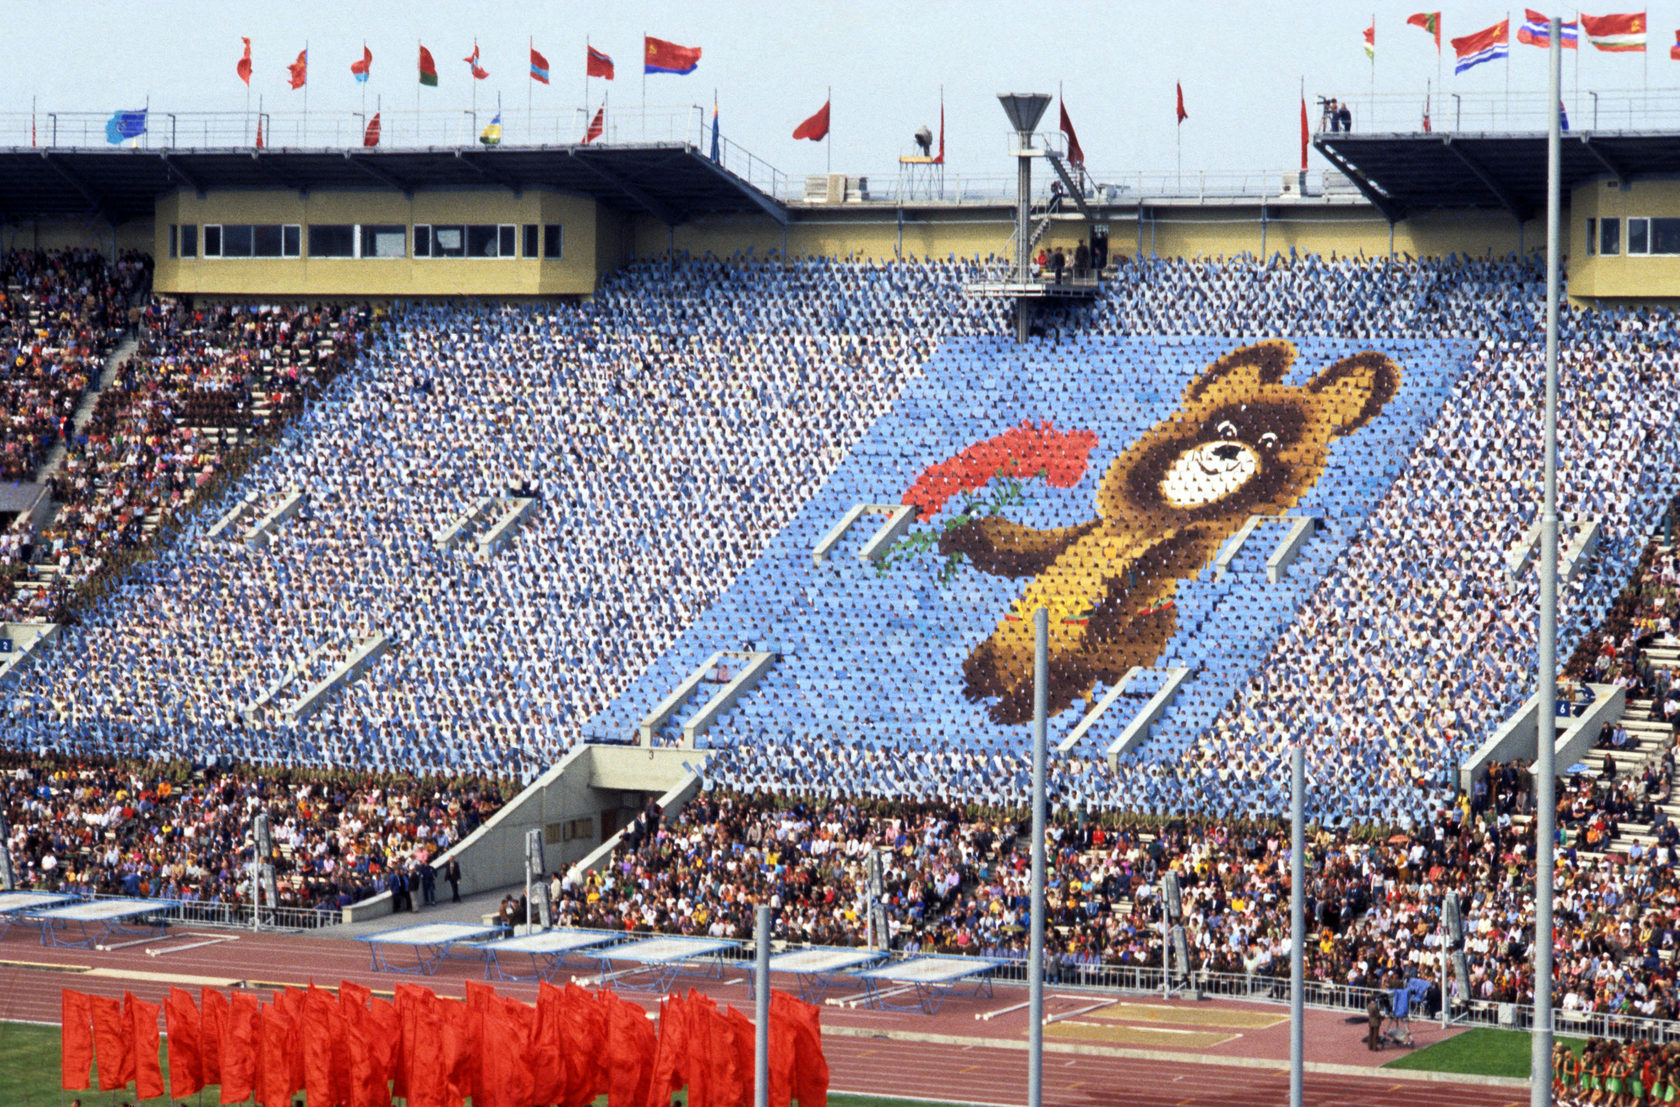 олимпийские игры в москве в 1980